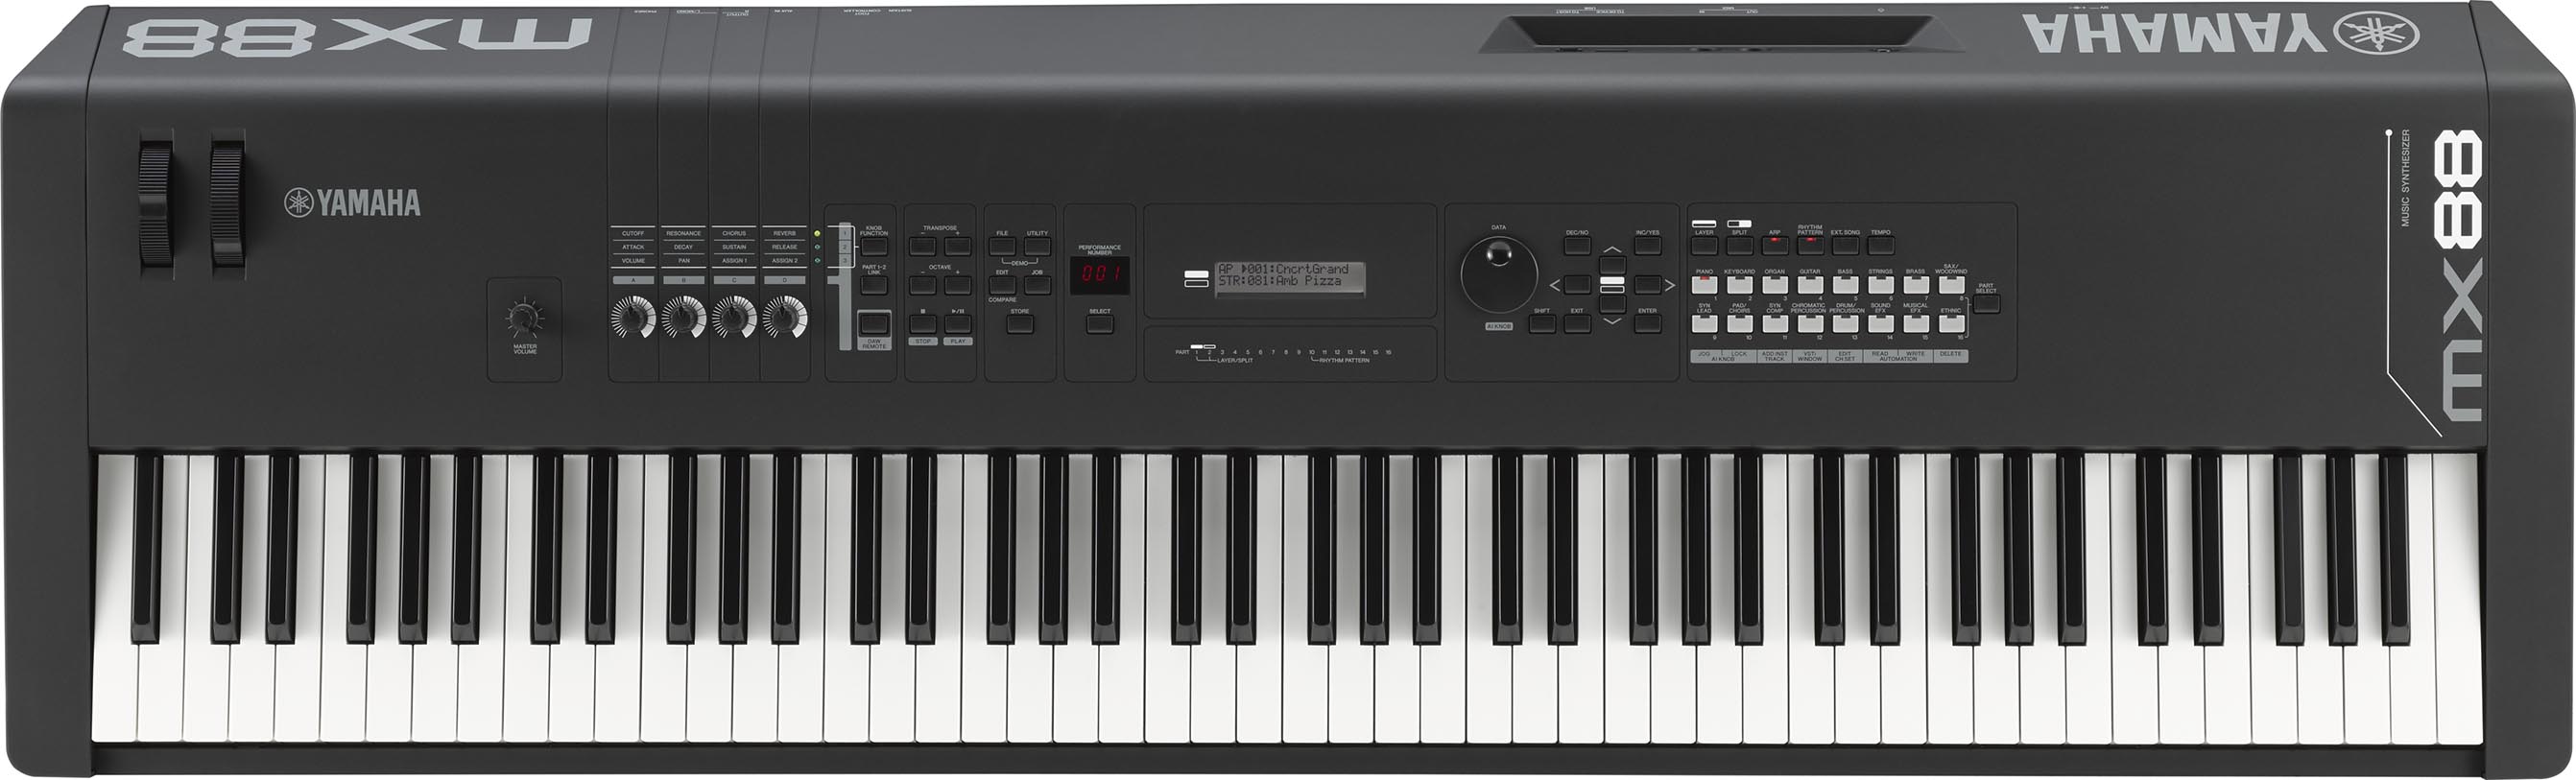 NEW限定品 MOXF8 88鍵キーボードシンセサイザー YAMAHAヤマハ MX88 88鍵 シンセサイザーピアノ キーボード - www